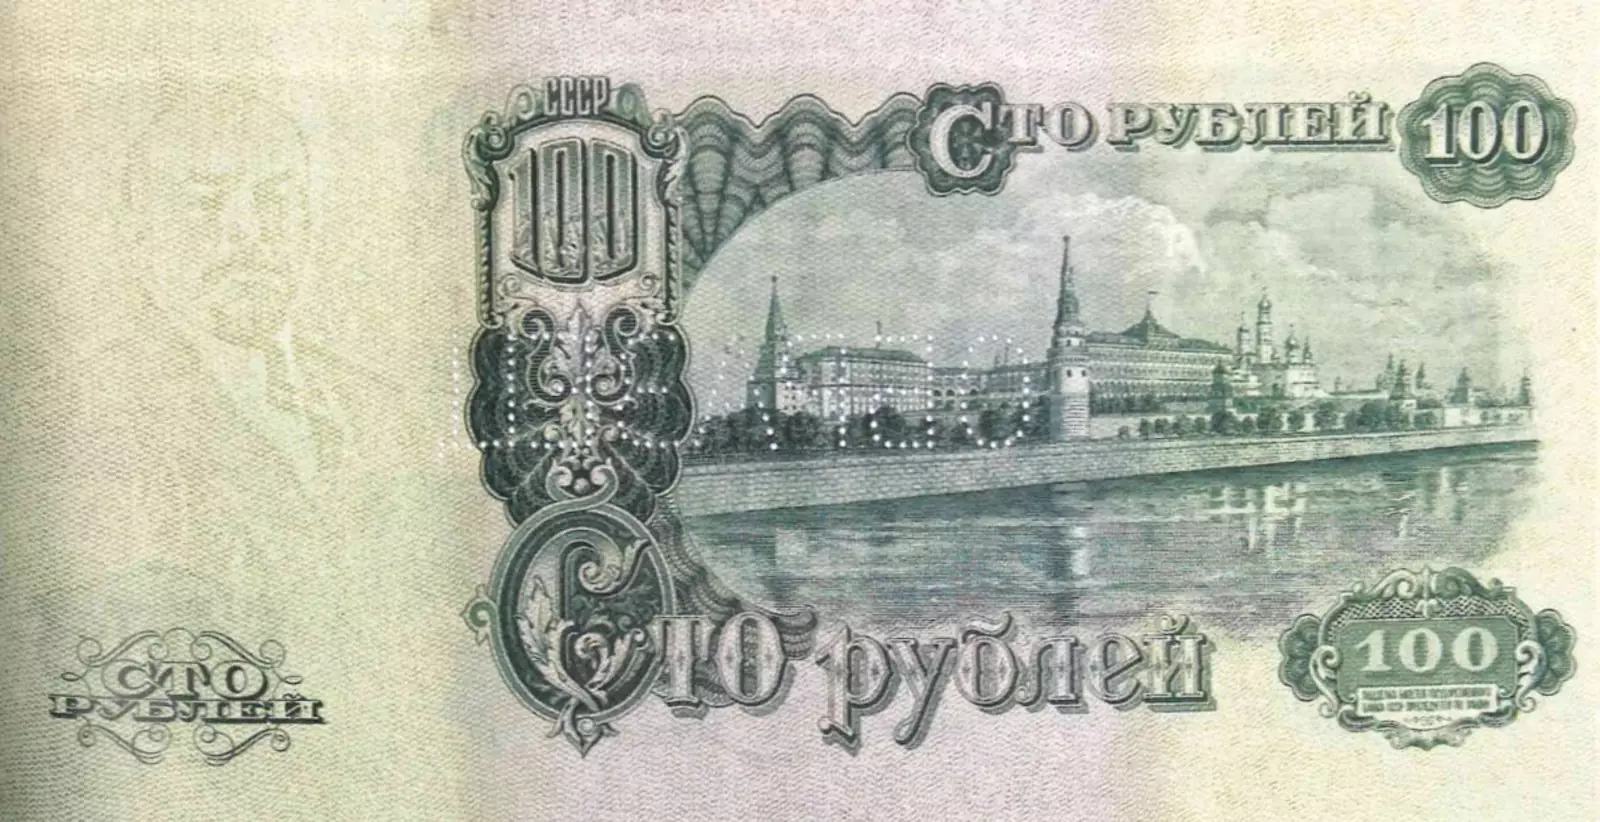 100 рублей образца 1947 года, оборотная сторона.Из фондов ФГУП «Гознак»